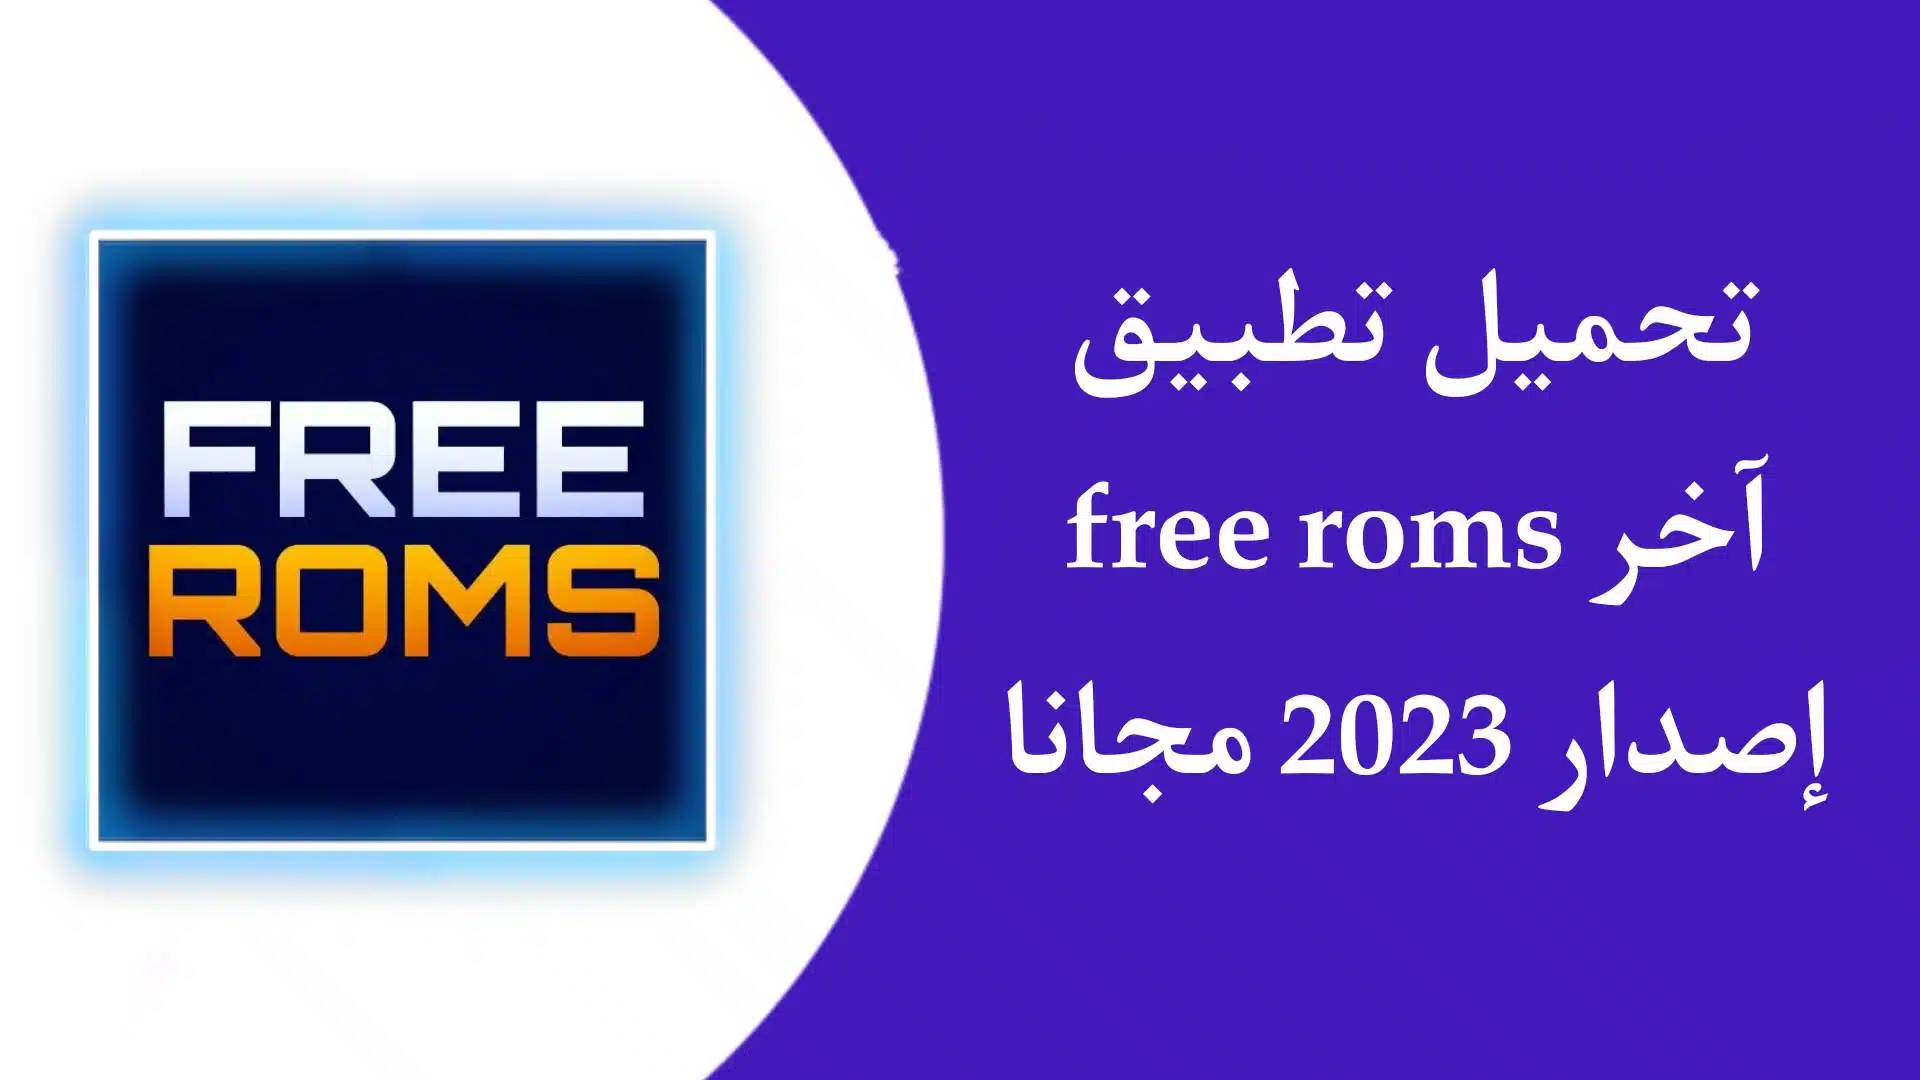 تحميل تطبيق free roms اخر اصدار للاندرويد والايفون 2023 مجانا